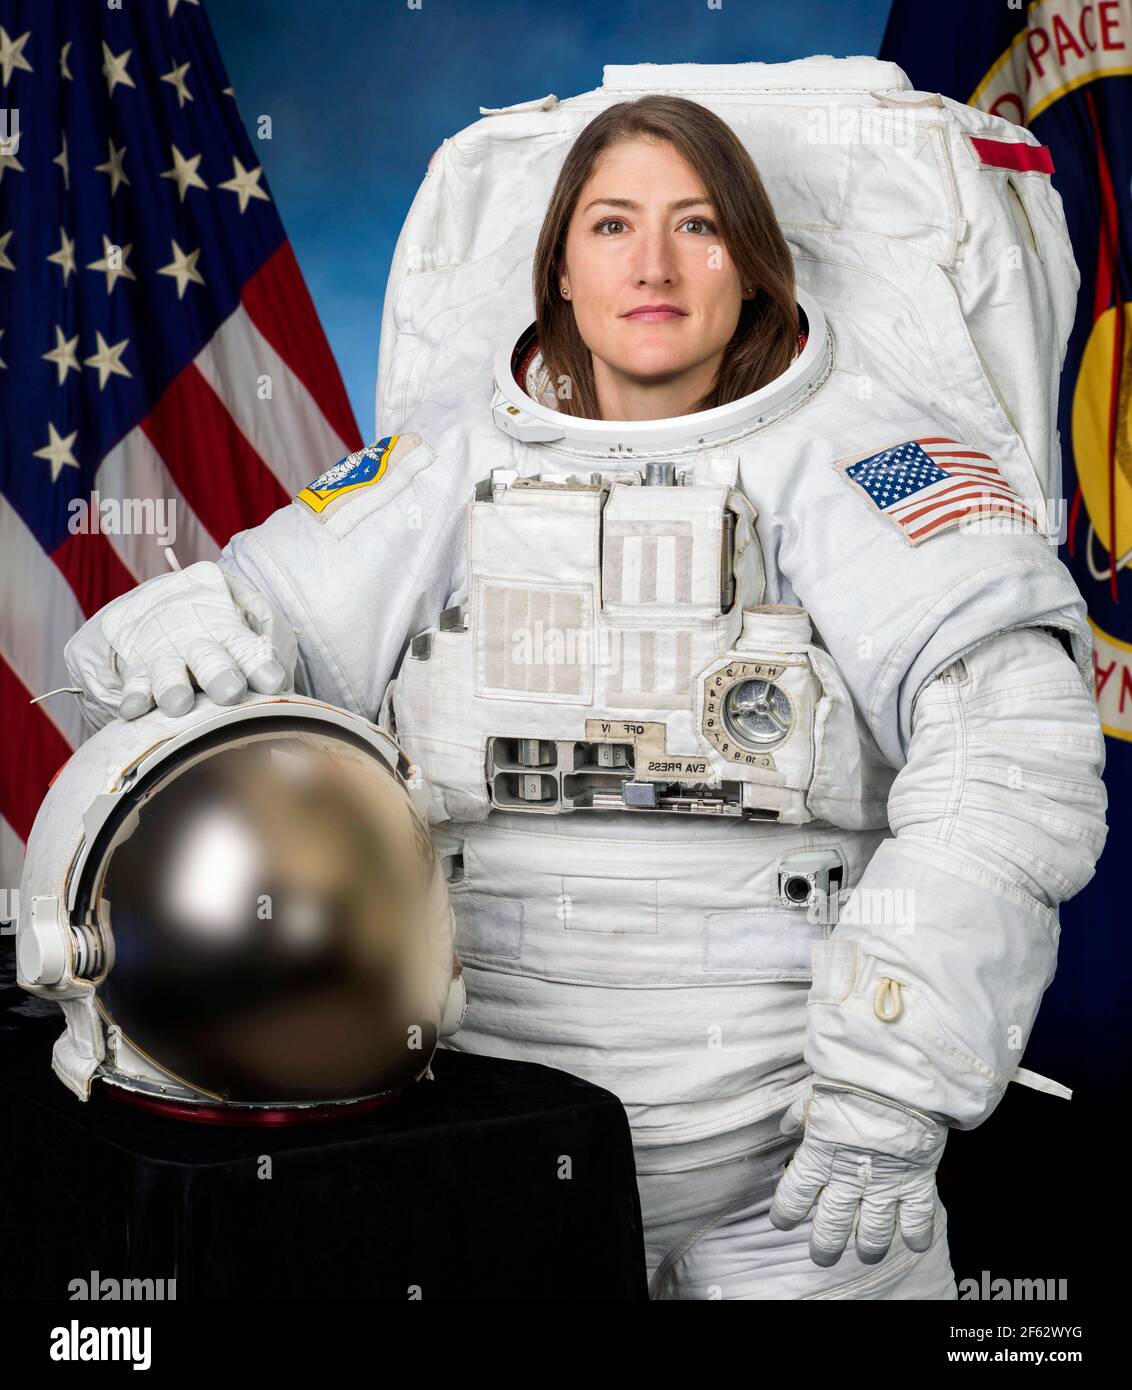 Christina Koch. Retrato de la astronauta de la NASA, Christina Hammock Koch (n. 1979) usando un traje de Unidad de movilidad Extrovehicular (EMU). Foto cortesía de NASA, 2018 Foto de stock